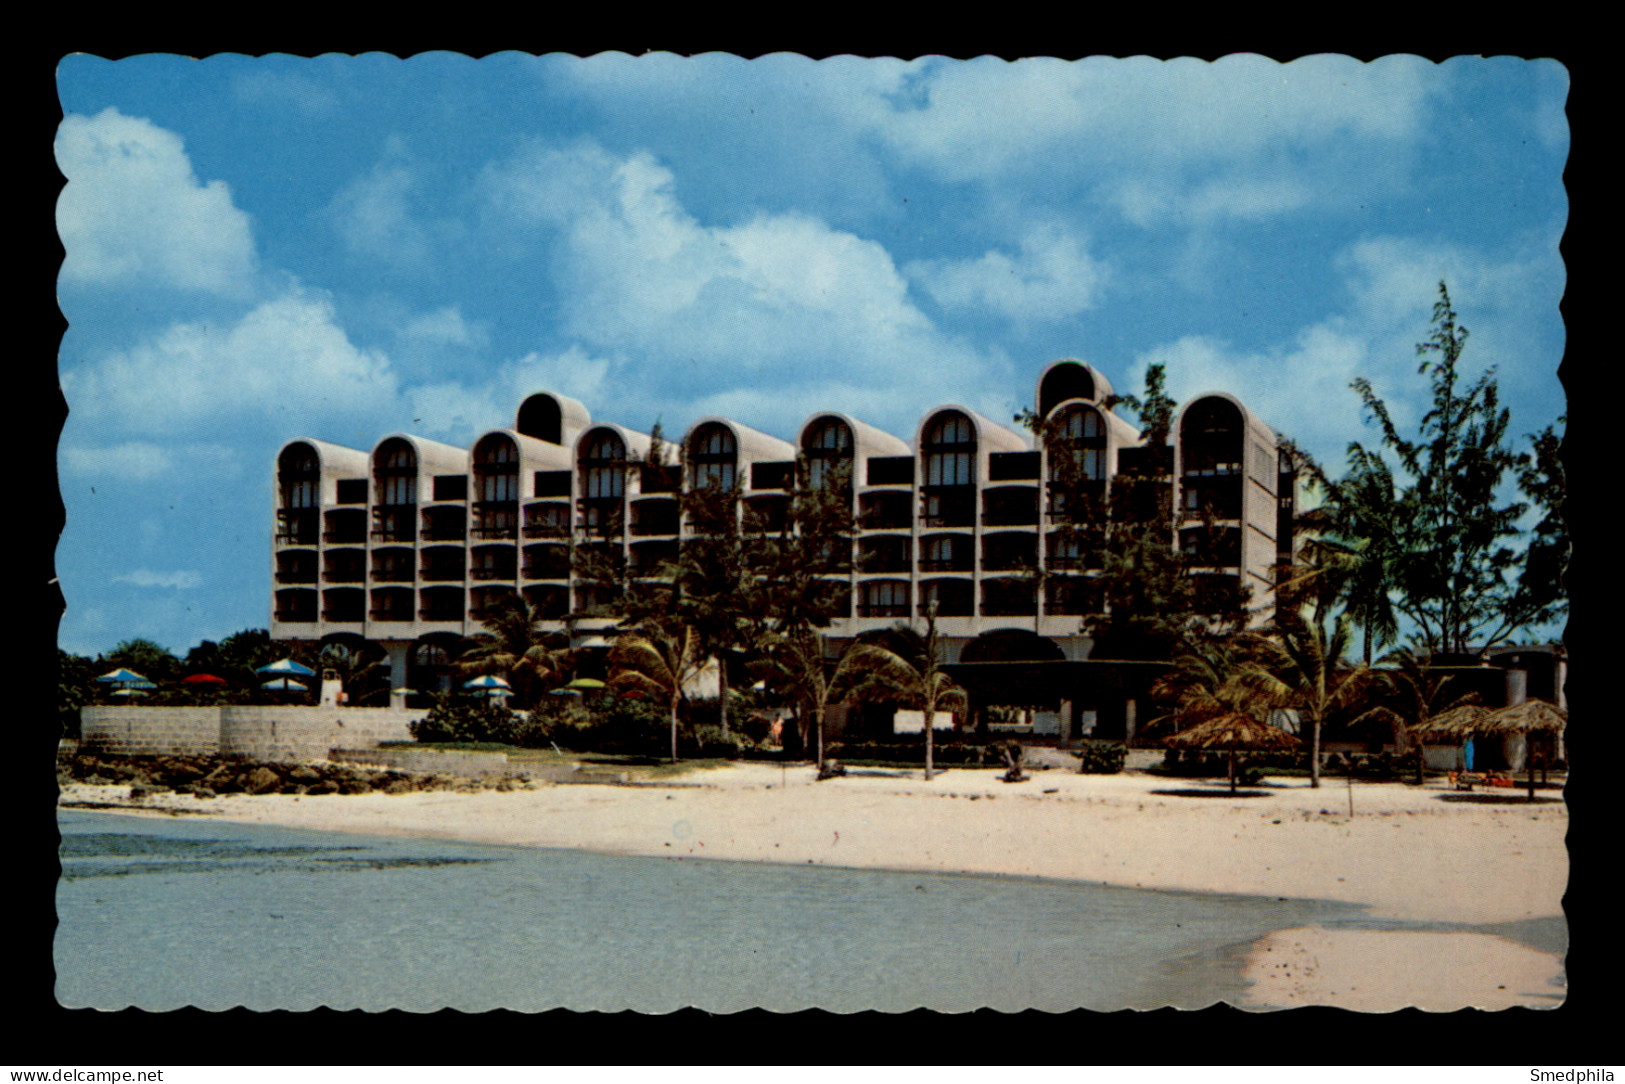 Barbados – Hilton Hotel - Barbades